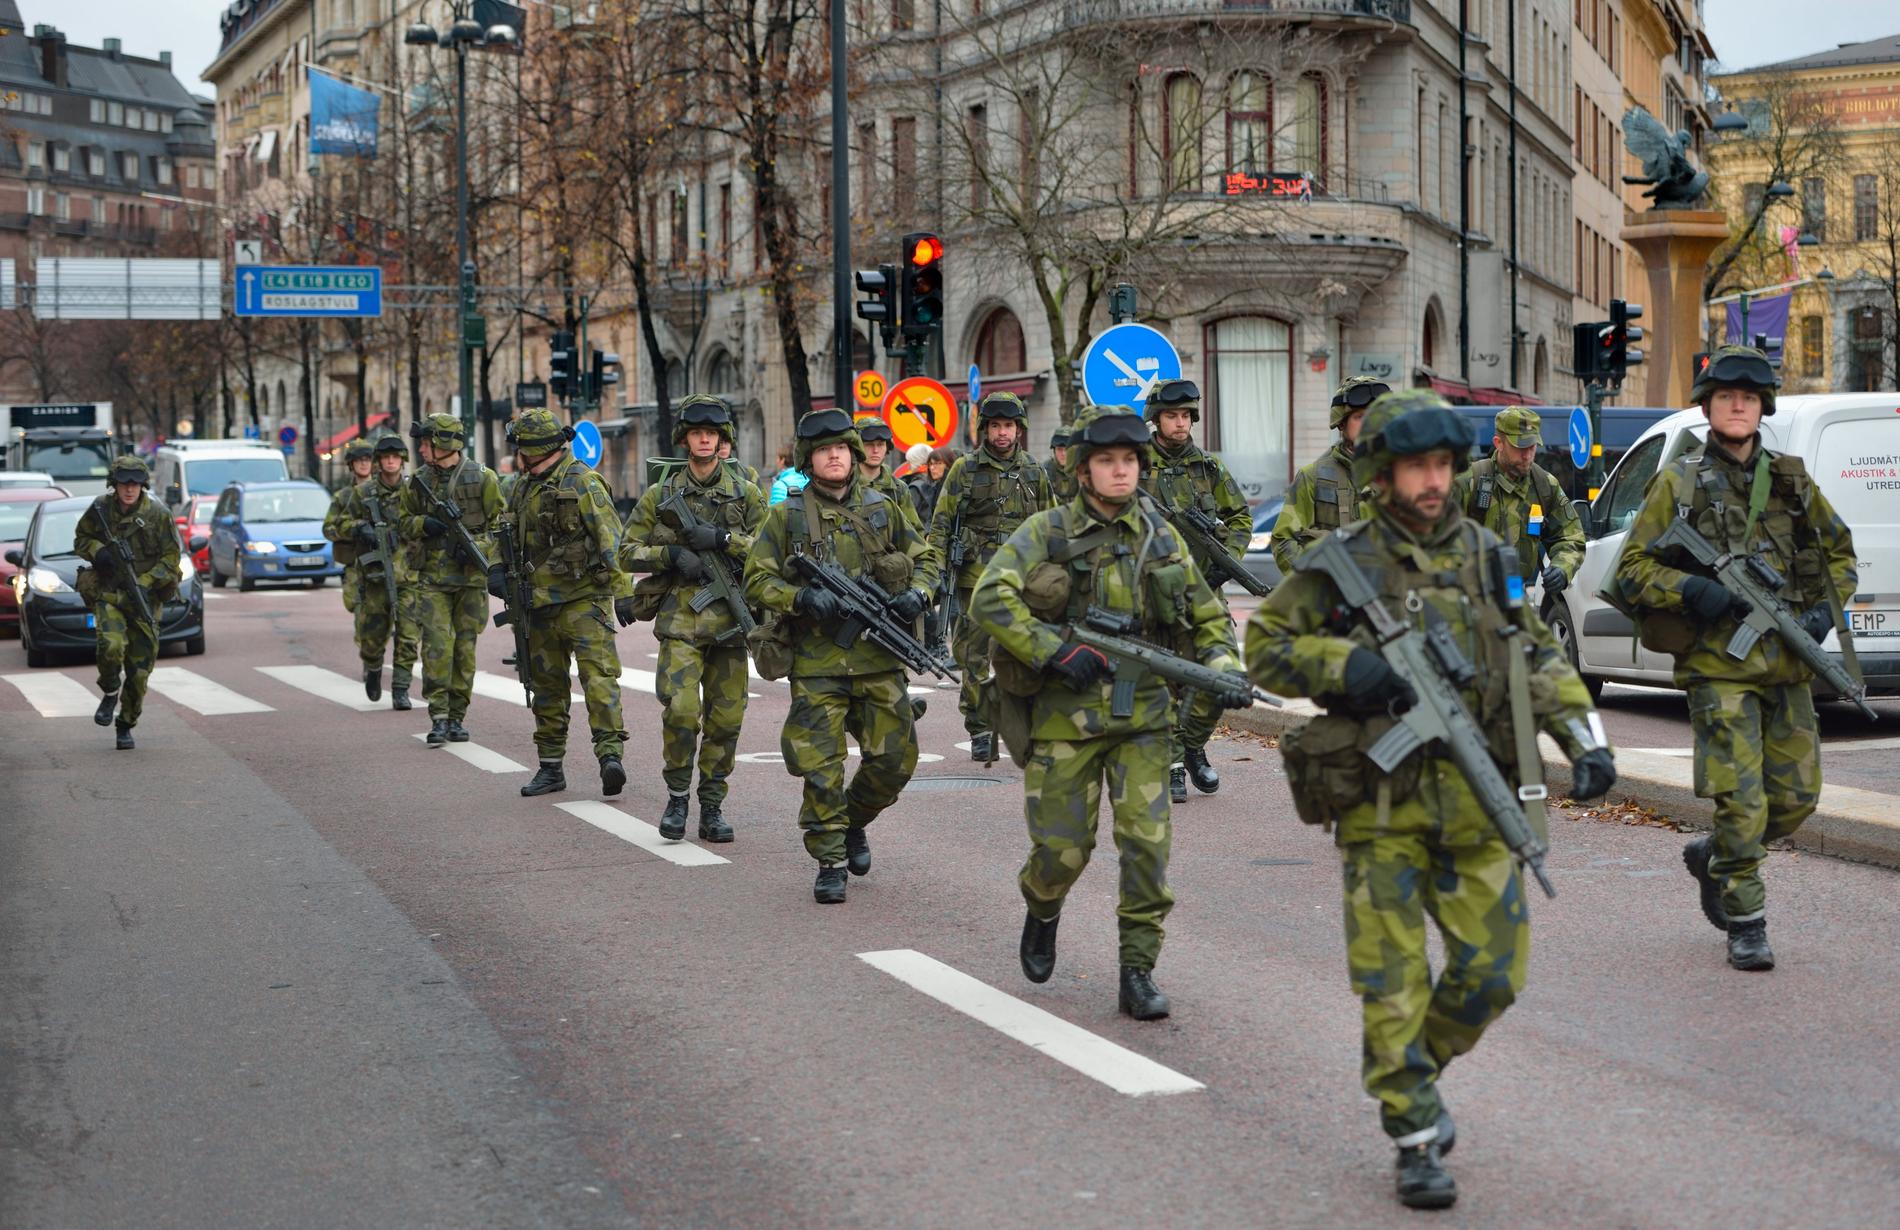 Svenska soldater övar strid i bebyggelse i centrala Stockholm. En viktig förmåga för försvaret av Sverige mot yttre hot.